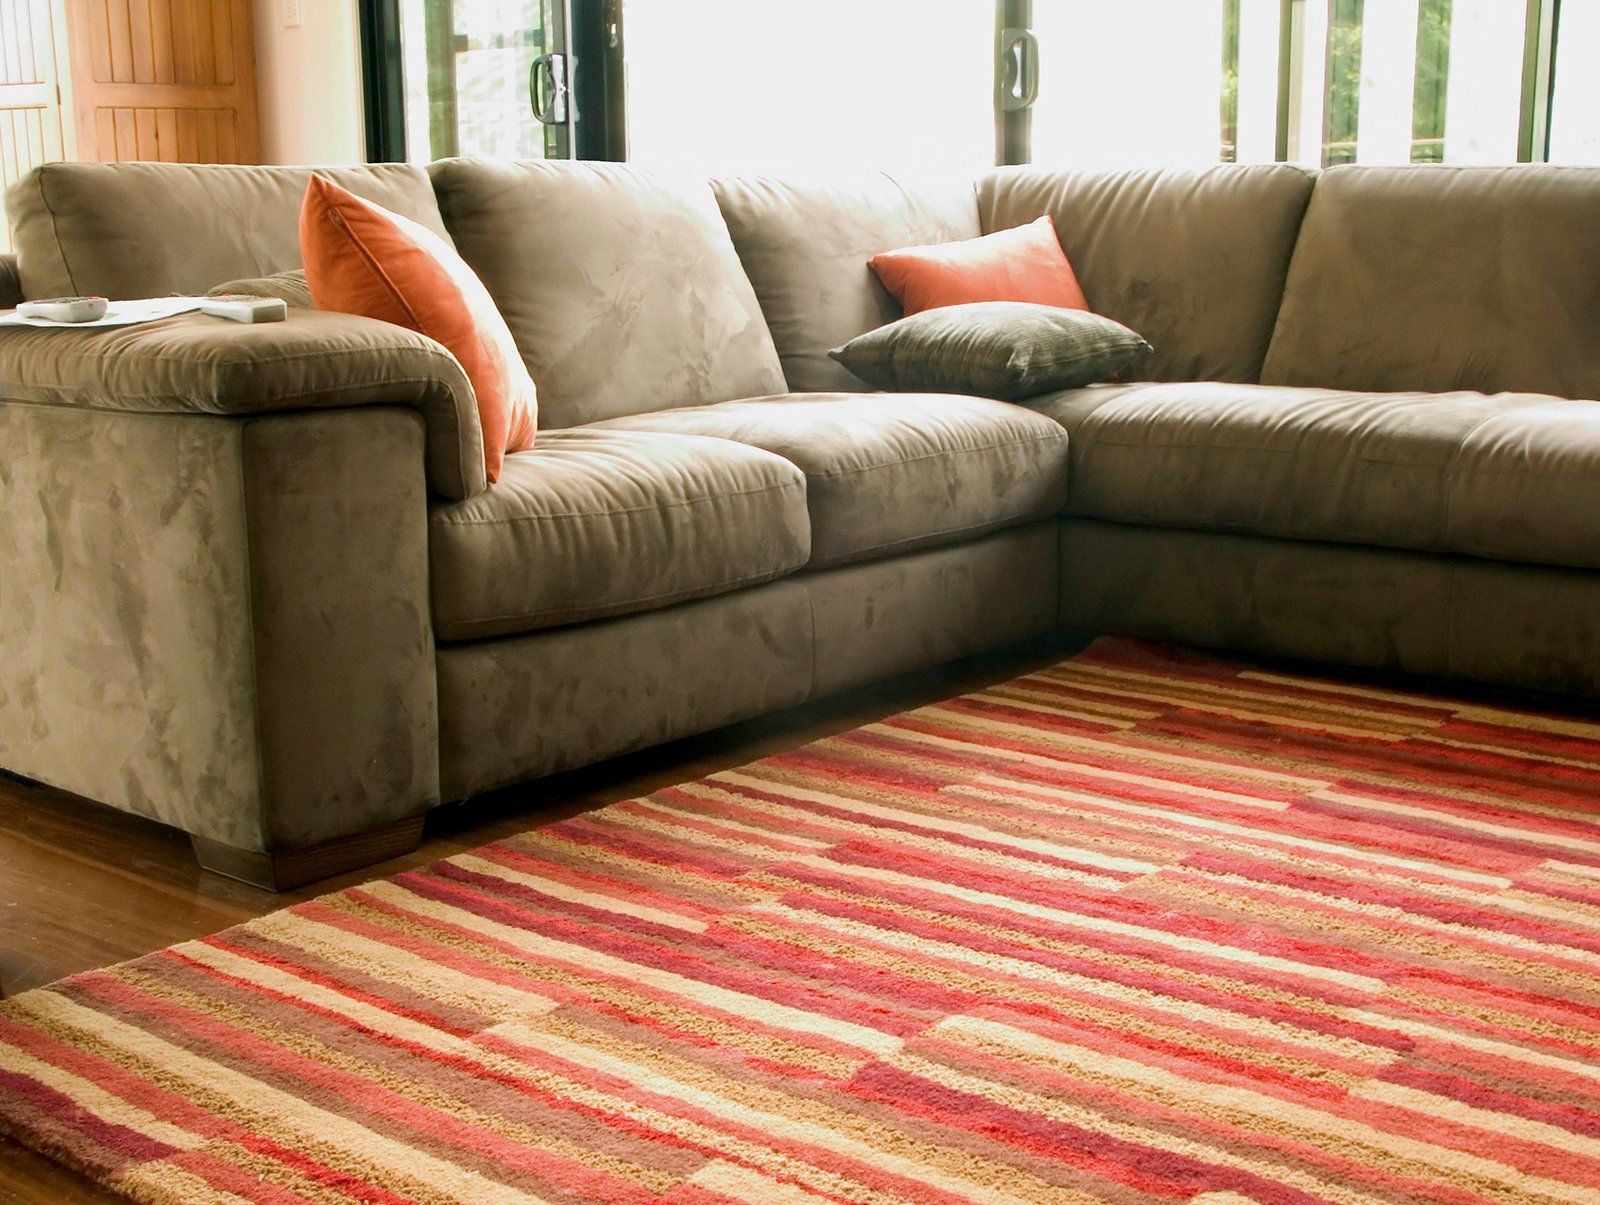 Living room sofa and a carpet